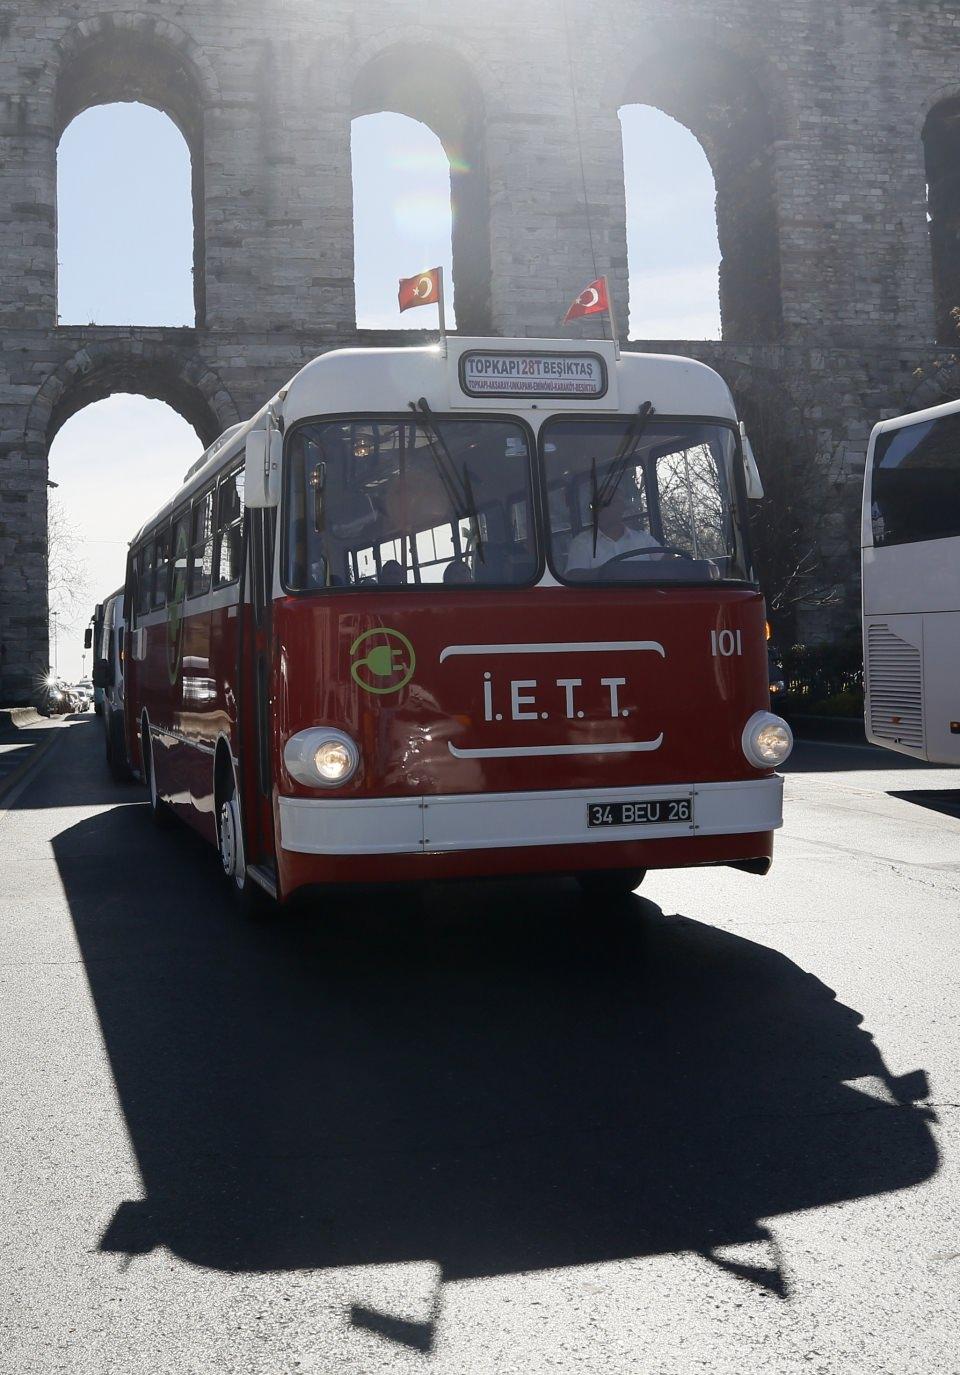 <p>İETT'li ustalarca 1968 yılında Şişli Garajı'ndaki atölyelerde 5 ay süren çalışma sonucunda üretilen ve yuvarlak hatları nedeniyle "Tosun" adı verilen ilk Türk troleybüsü, elektrikli otobüse dönüştürüldü. Yüzde 100 elektrikle çalışır hale getirilen araç, çevresel farkındalık oluşturmak amacıyla İstanbul Caddeleri'ne döndü.</p>

<p> </p>
